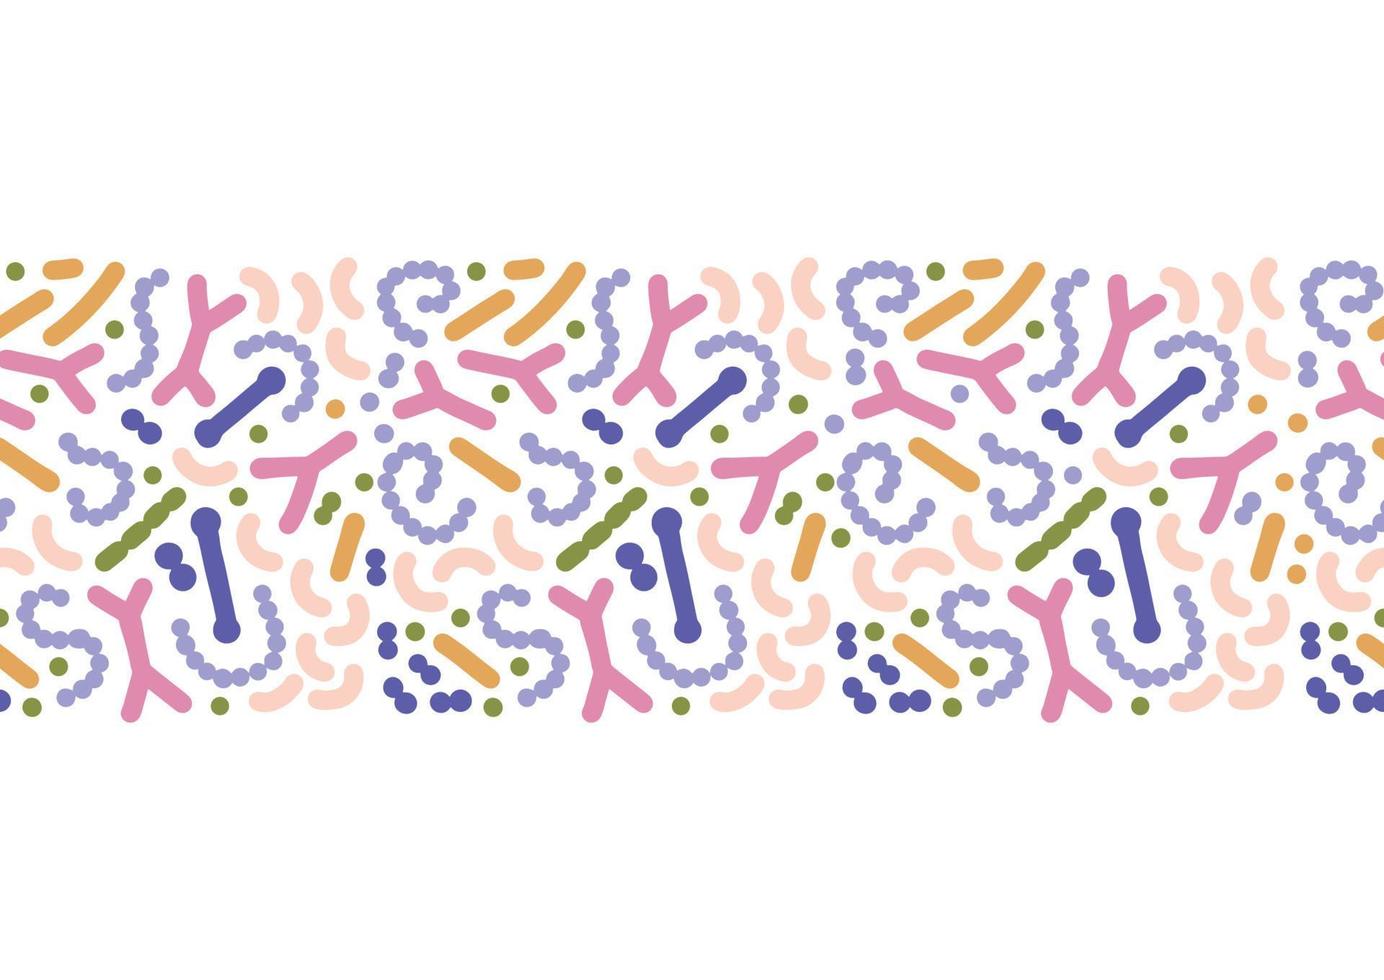 borde sin costuras del microbioma. las bacterias probióticas se imprimen con lactobacilos coloridos, bifidobacterias, acidófilos. ilustración de biología dibujada a mano plana. vector